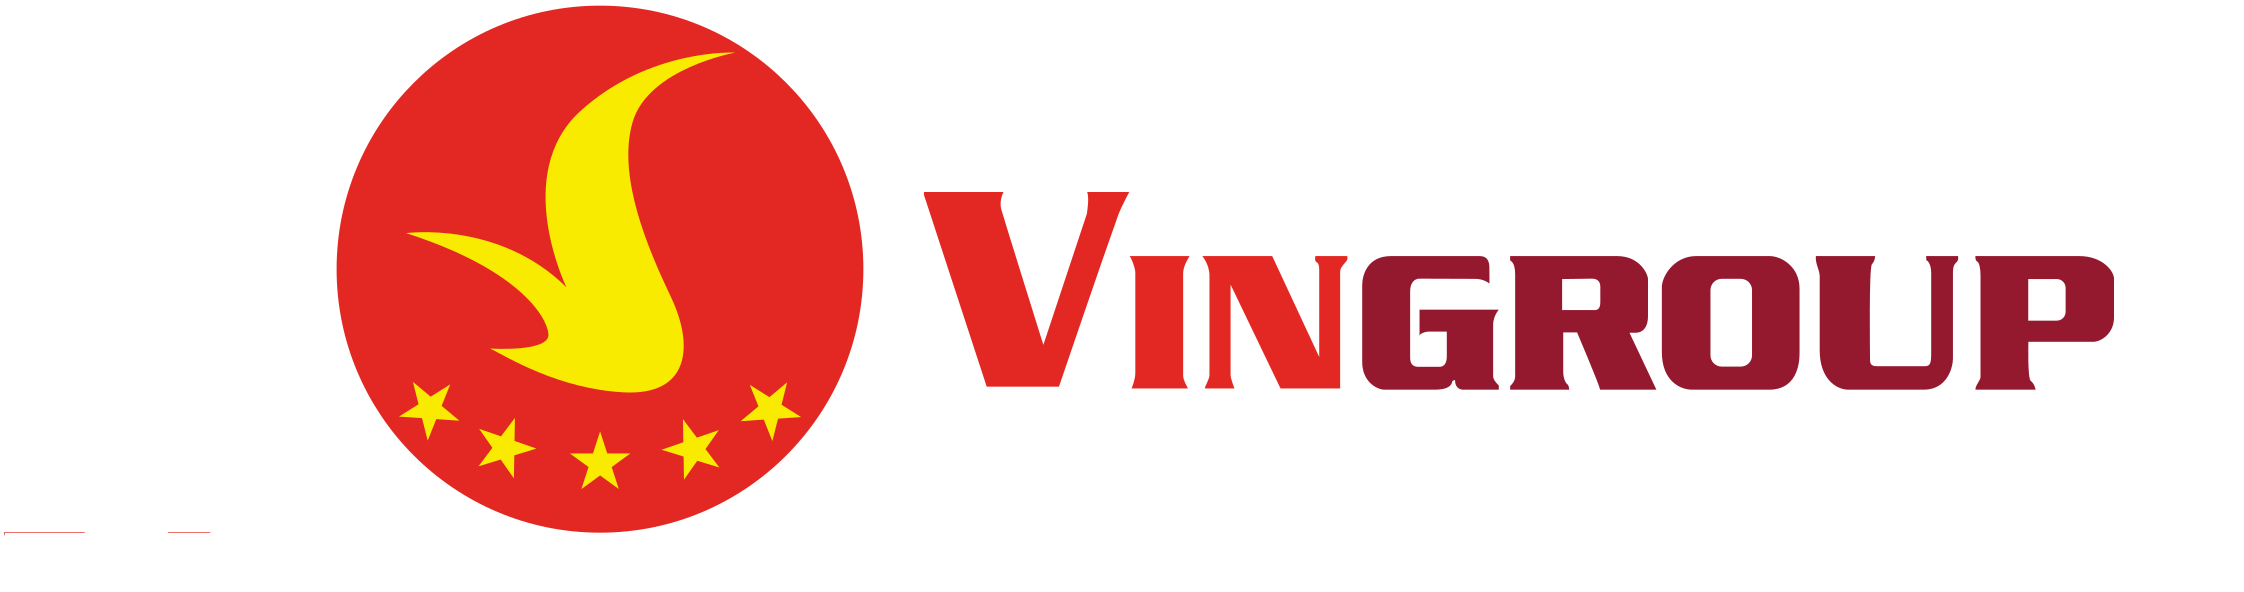 Vingroup_logo_small.svg-1.png